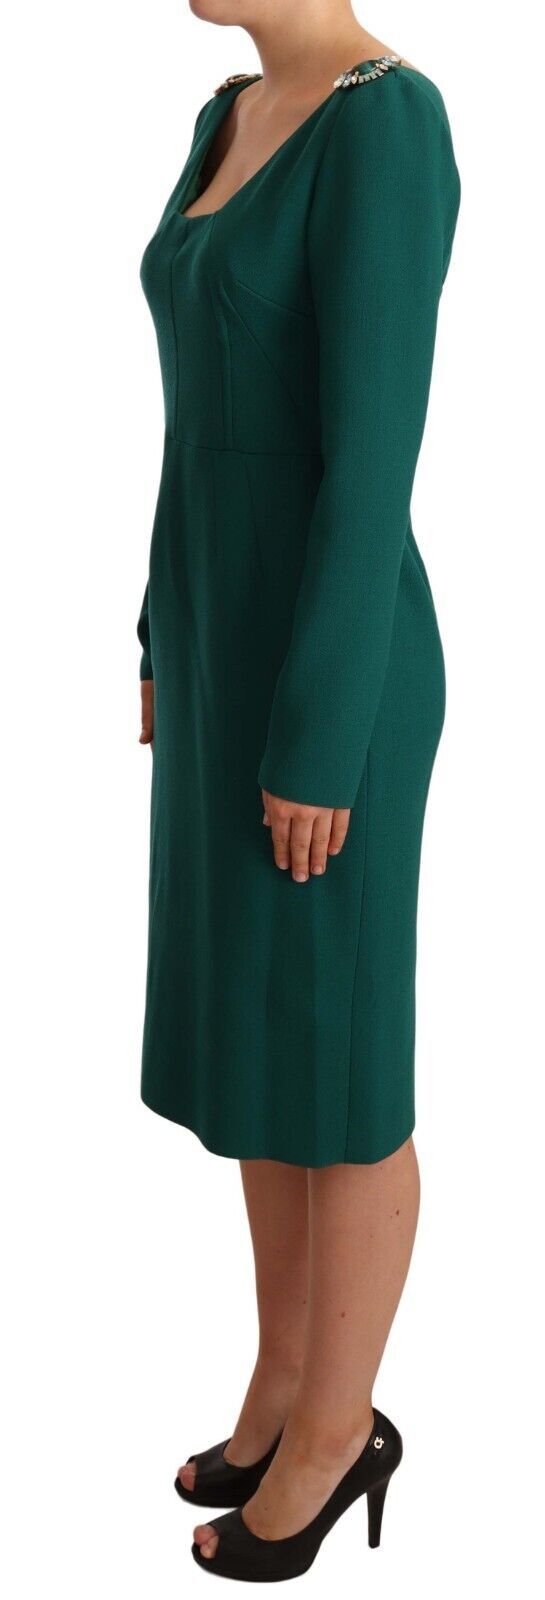 Emerald Green Midi Sheath Dress with Crystal Brooch